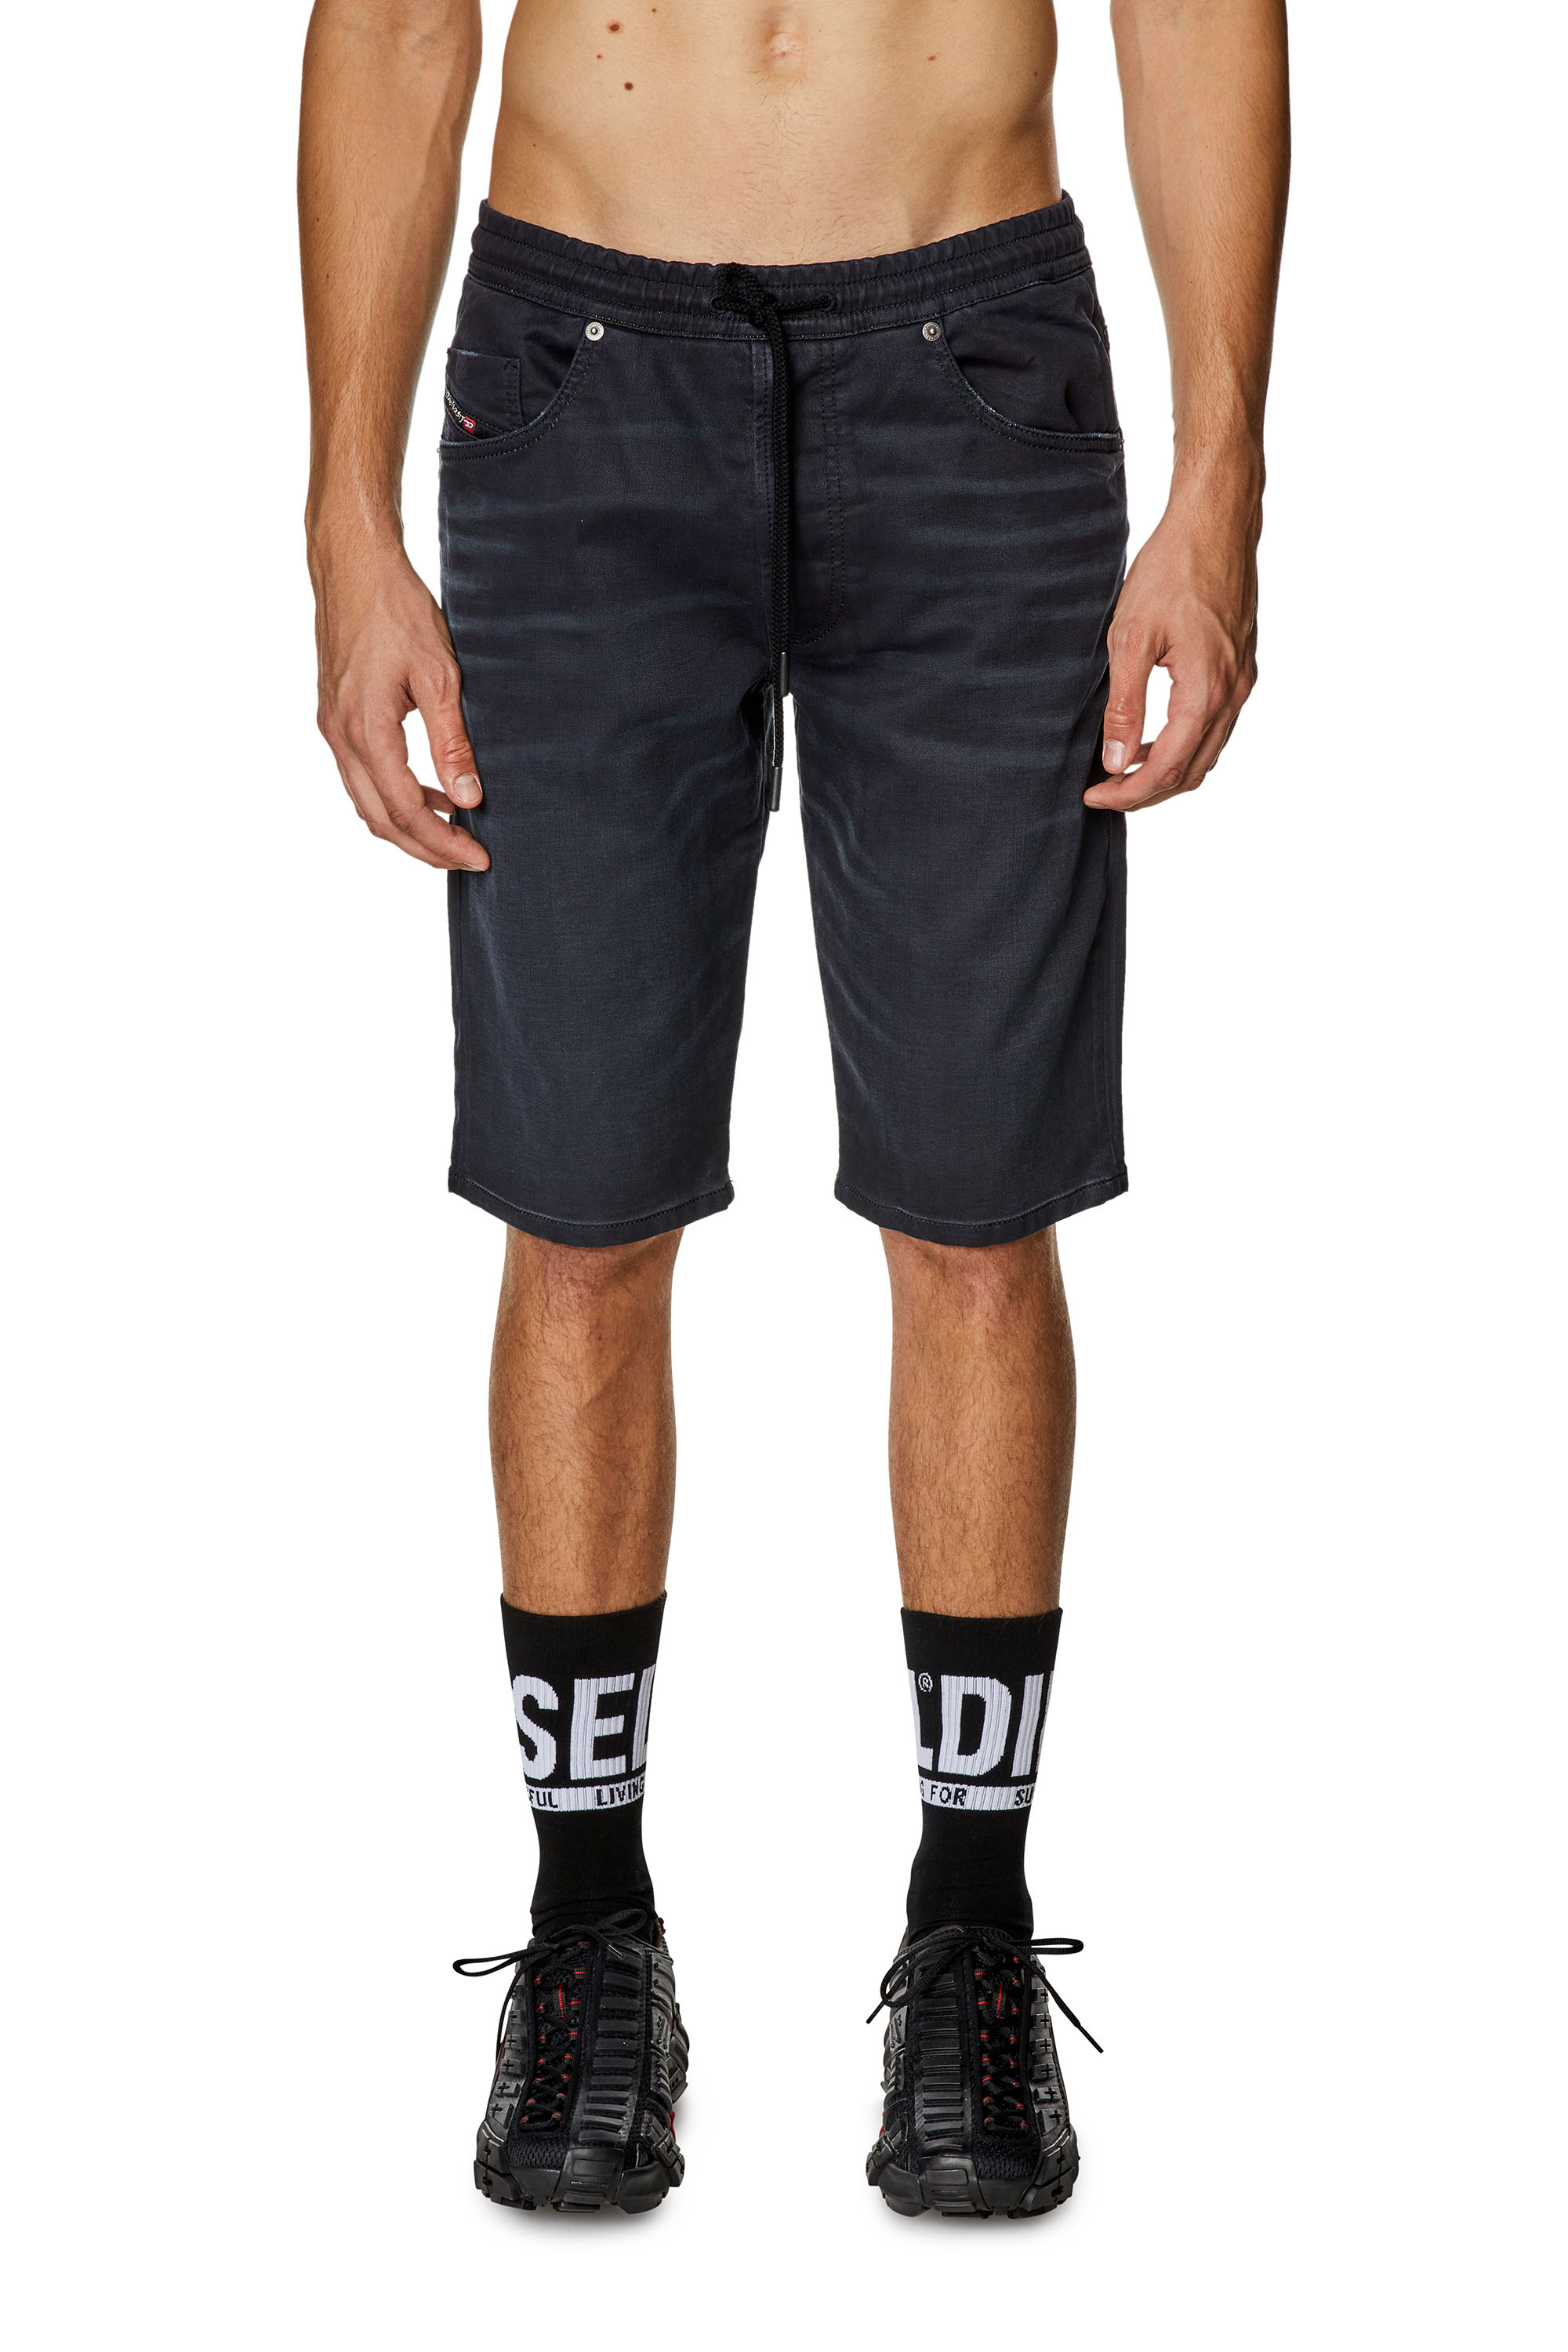 Diesel - Pantalones cortos chinos en Jogg Jeans - Shorts - Hombre - Negro